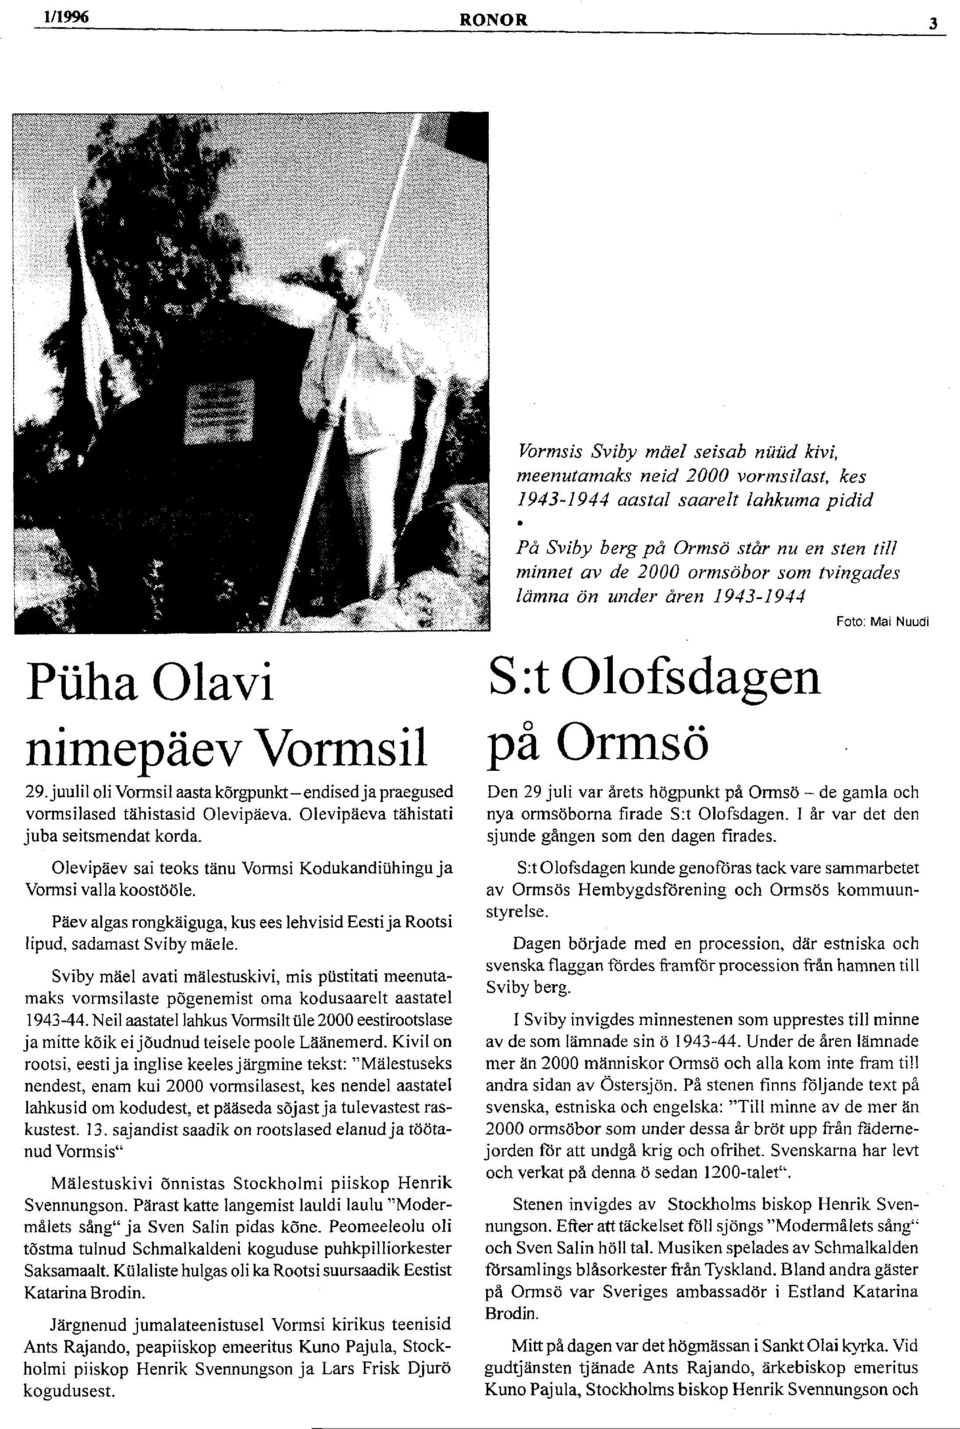 Olevipäev sai teoks tänu Vormsi Kodukandiühingu ja Vormsi valla koostööle. Päev algas rongkäiguga, kus ees lehvisid Eesti ja Rootsi lipud, sadamast Sviby mäele.